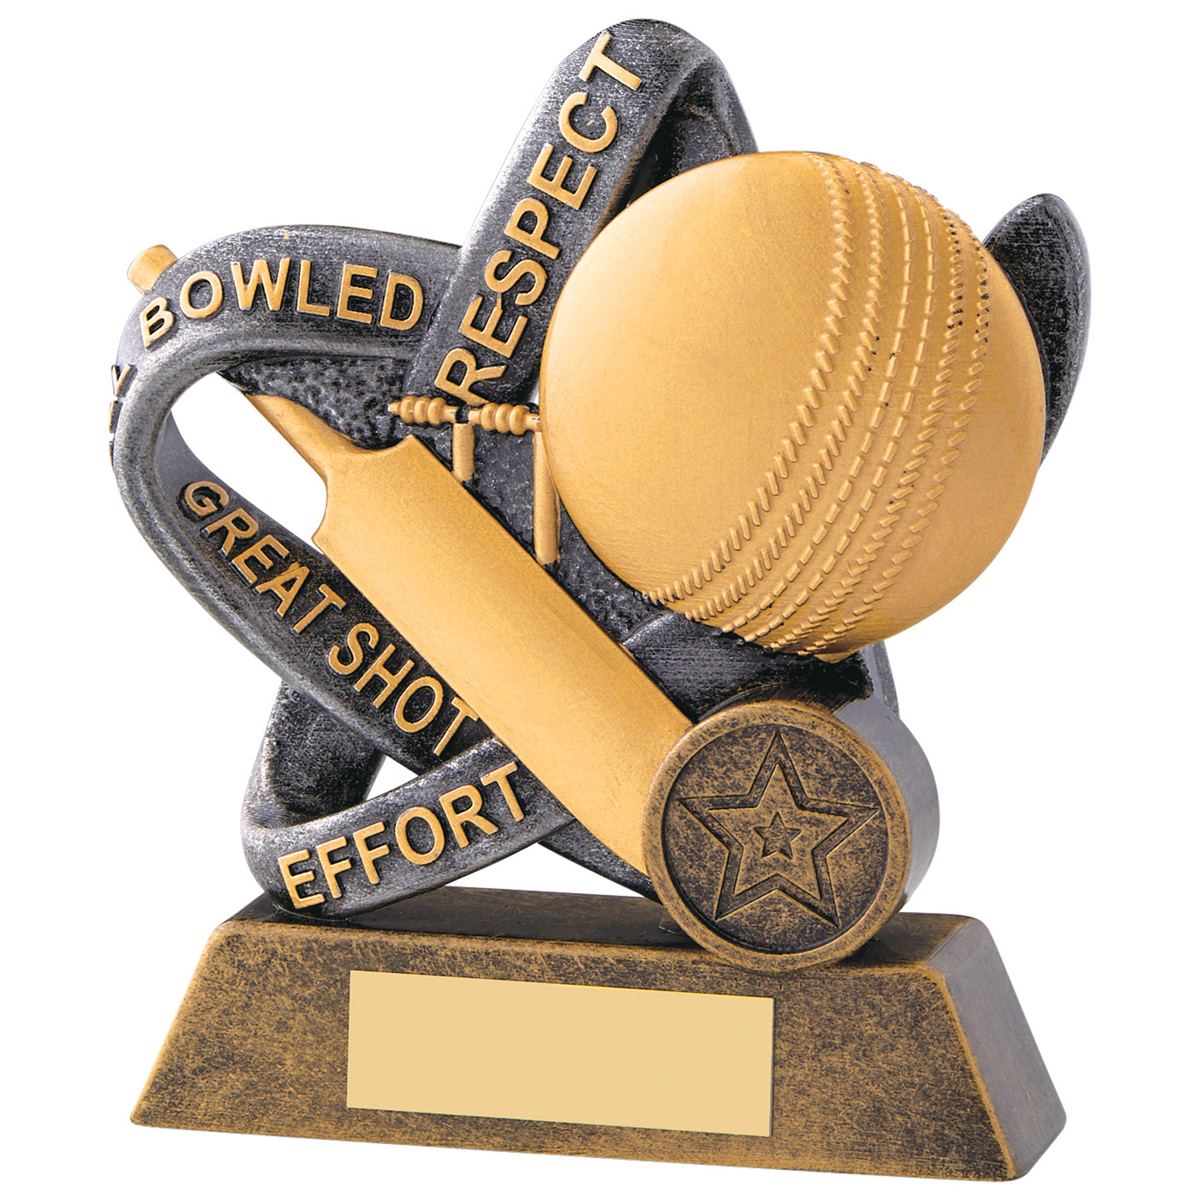 Cricket Values Trophy Infinity Award